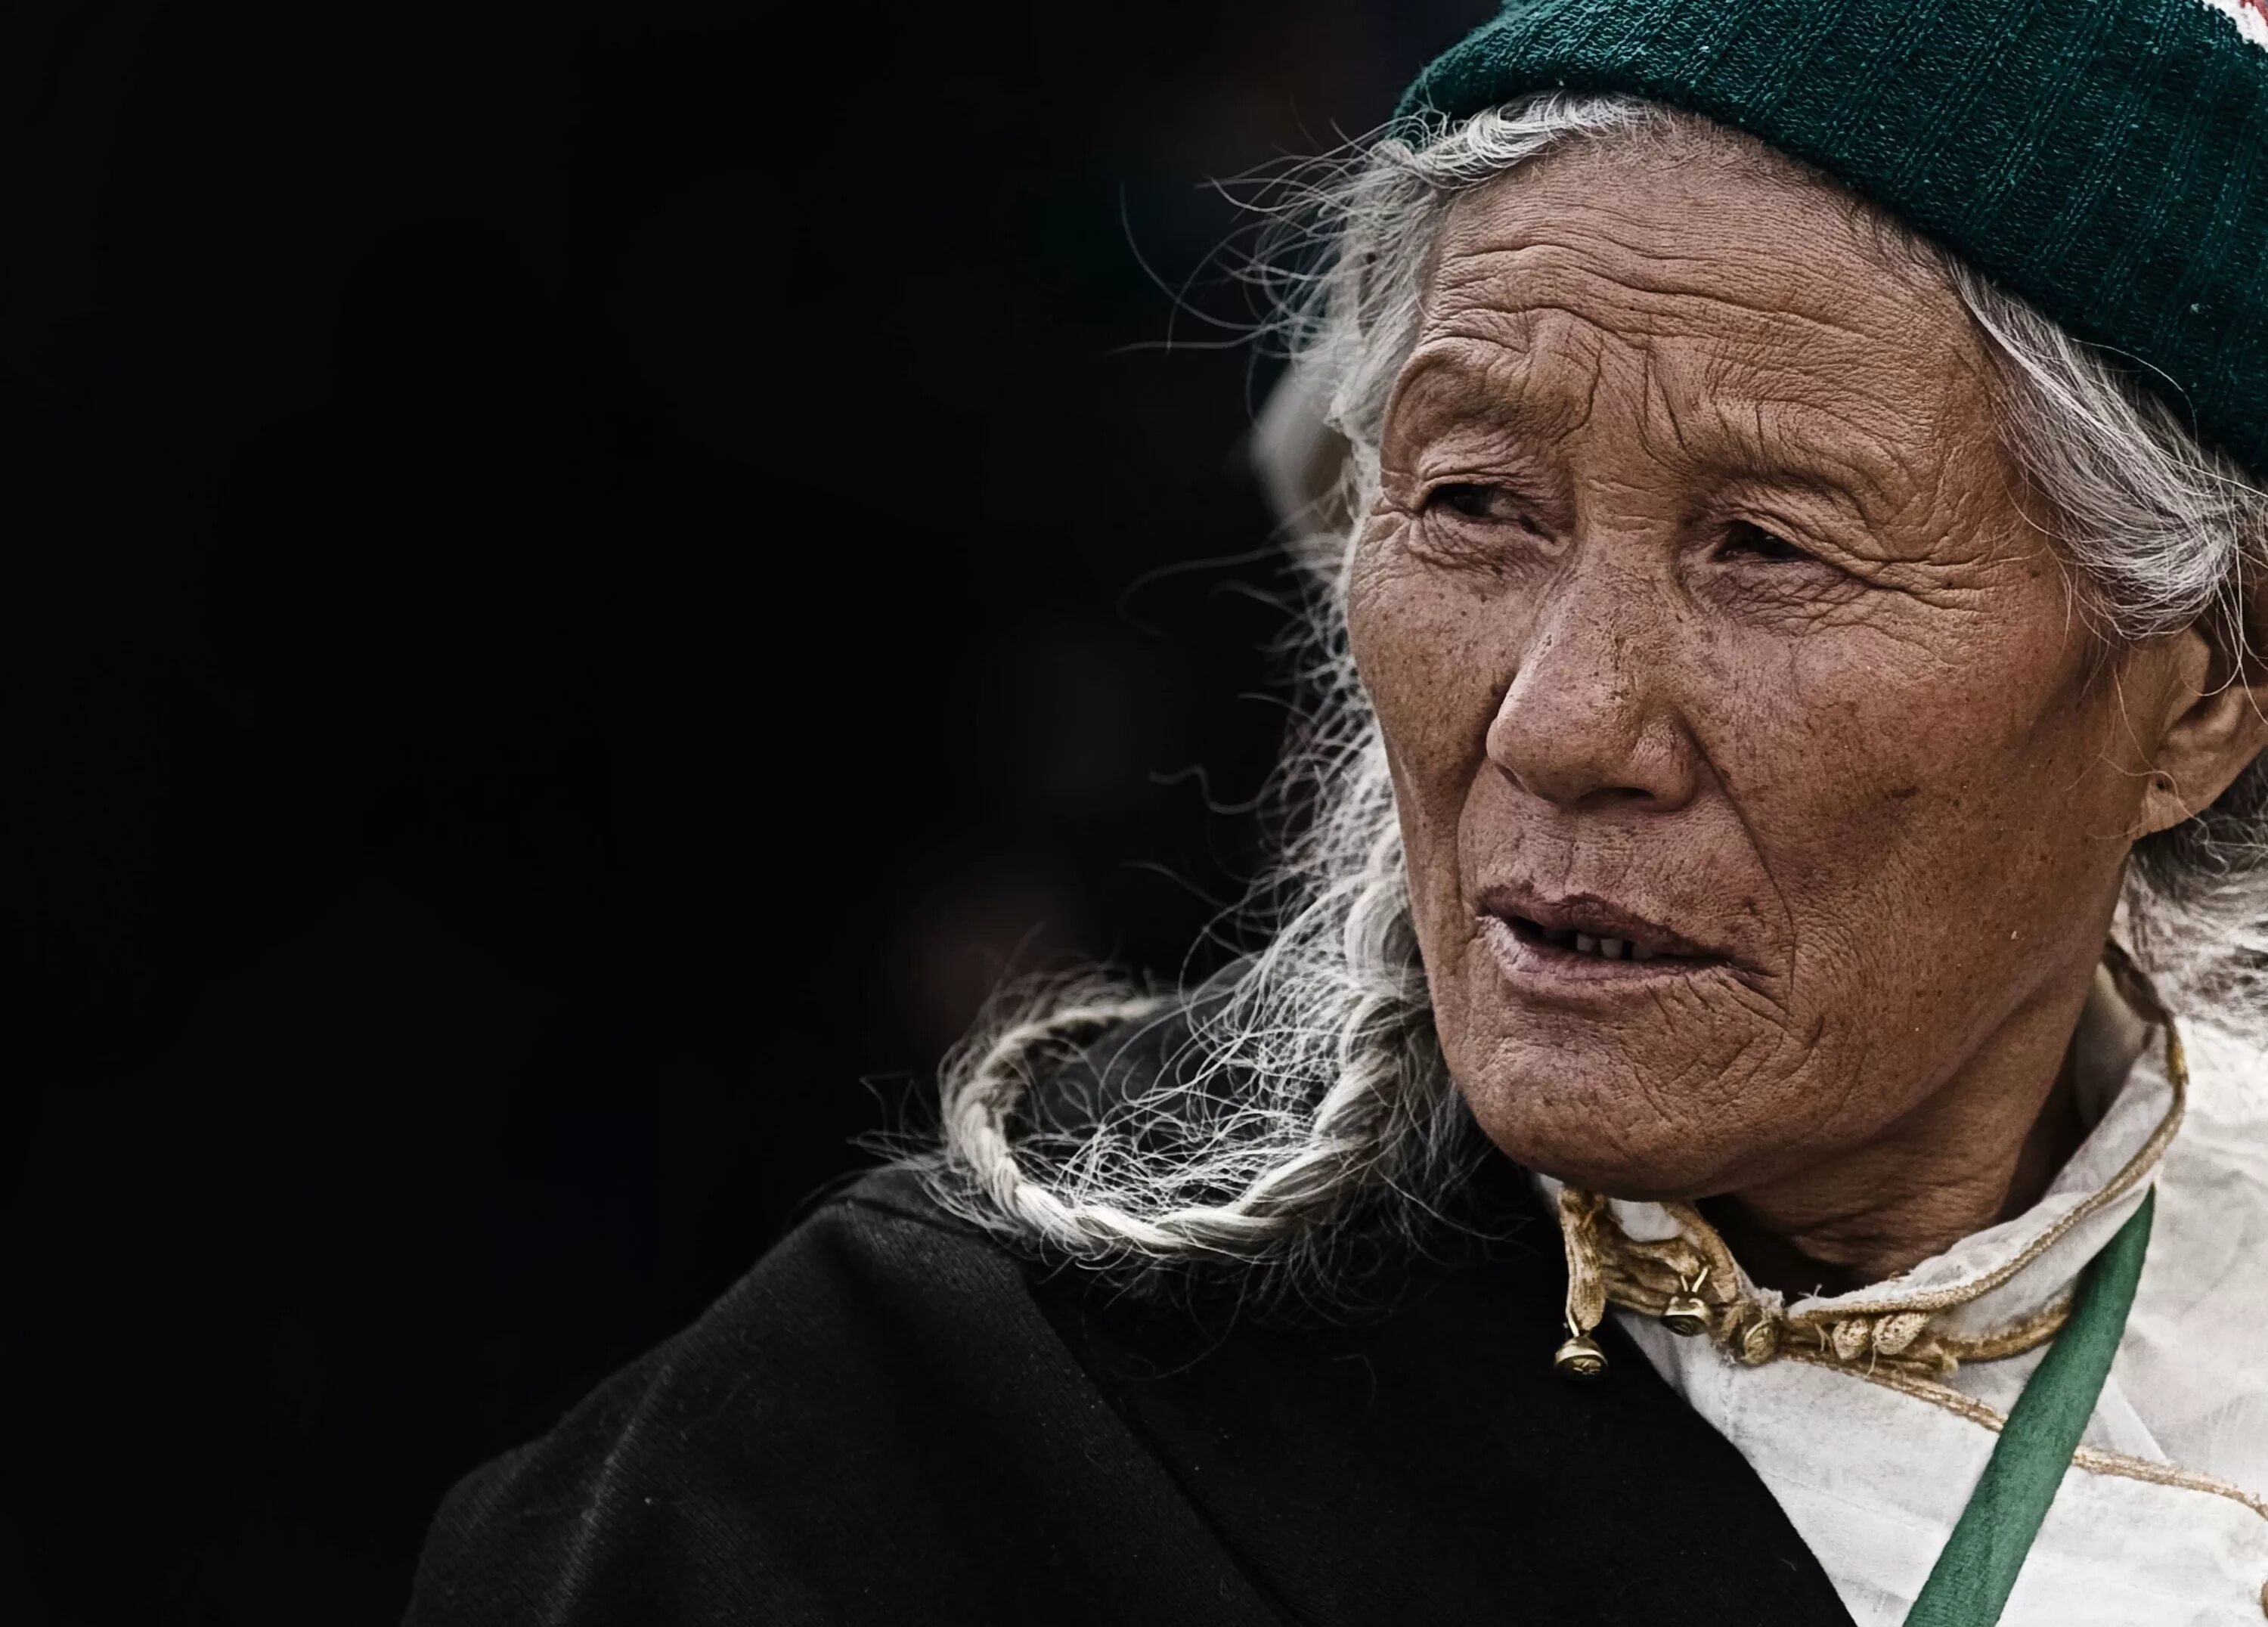 Бабушка какое лицо. Азиатская бабушка. Портрет пожилой женщины. Пожилые люди. Старая женщины Тибета.